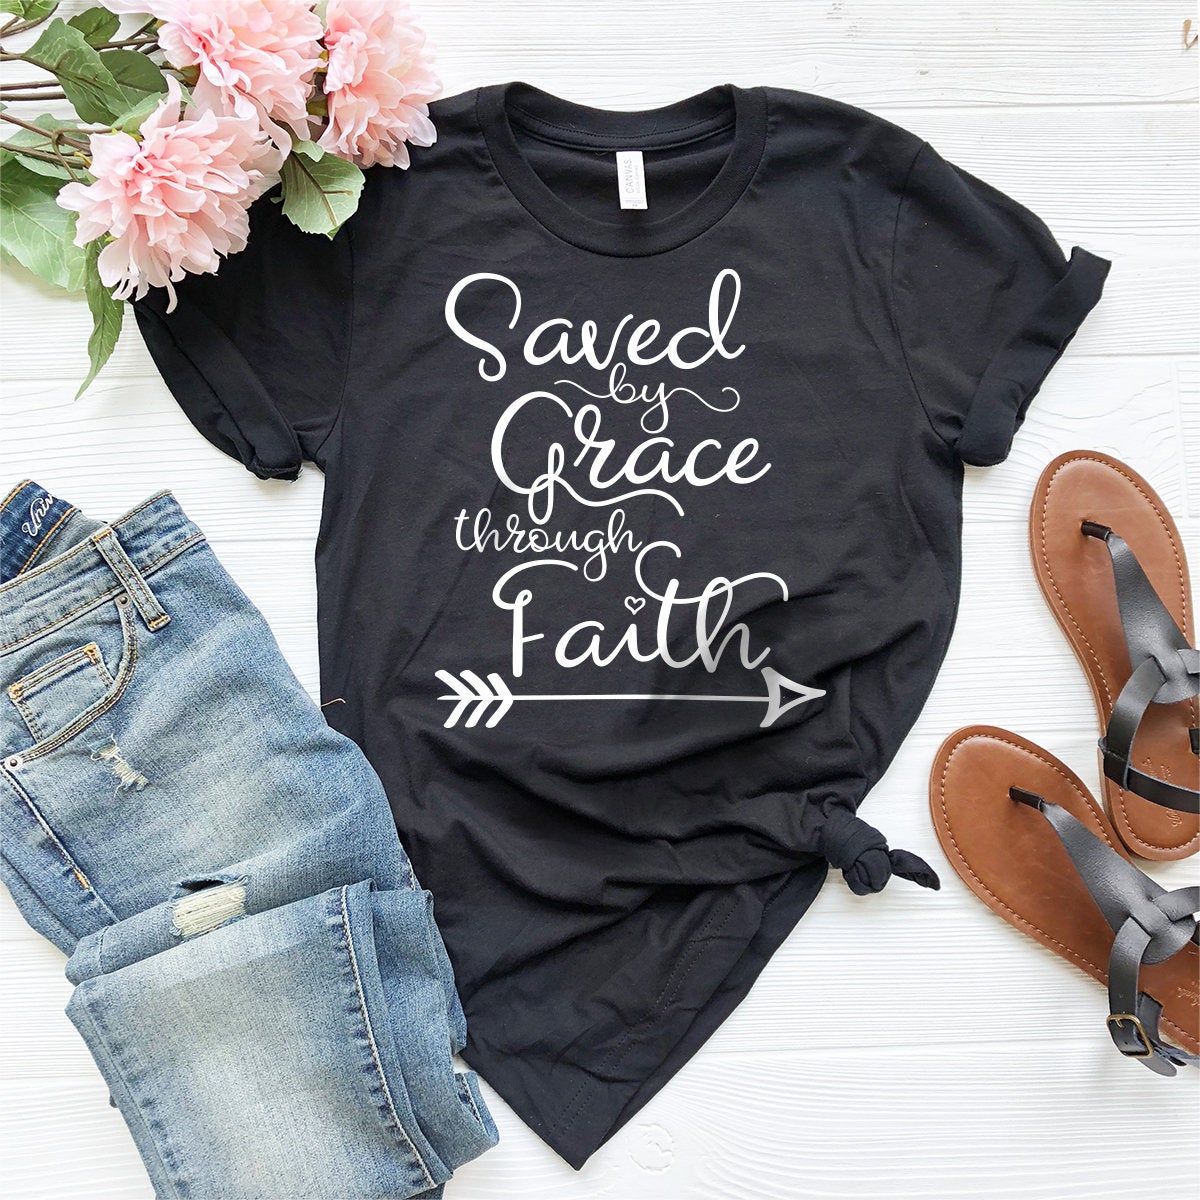 Saved By Grace Through Faith T-Shirt, Christian Tee, Religion Shirt, Religious T-Shirt, Religious Quote Shirt, Faith Shirt, Jesus Lover Tee - Fastdeliverytees.com